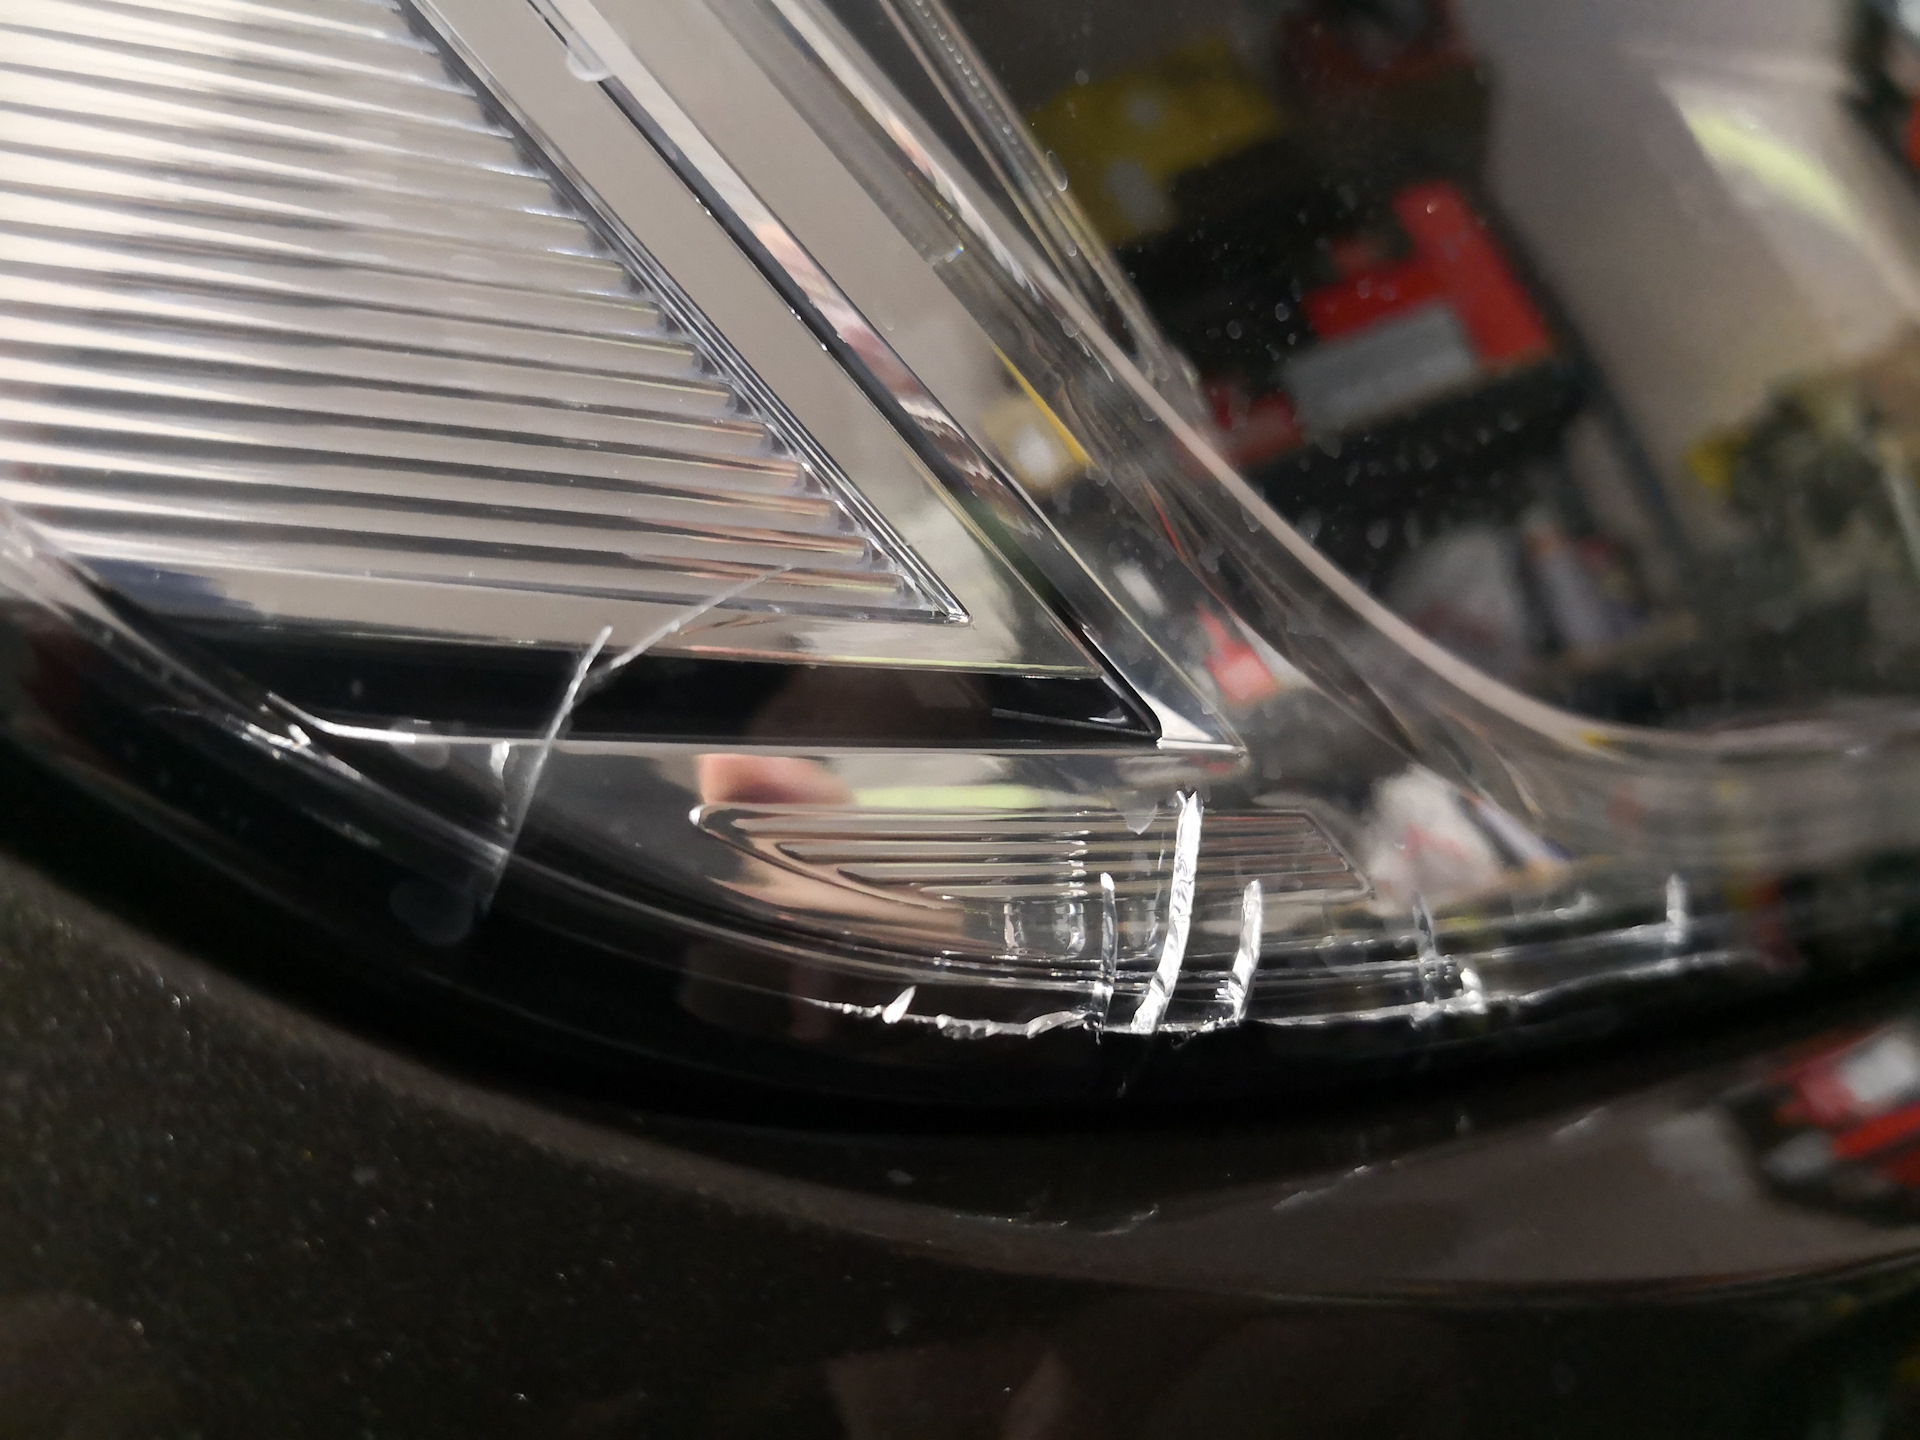 Ремонт передних фар. Acura TLX 2014 стекла фары потрескались. Разбитые стекла фар Ауди q7. Трещинки на стекле фары. Микротрещина на стекле фары.